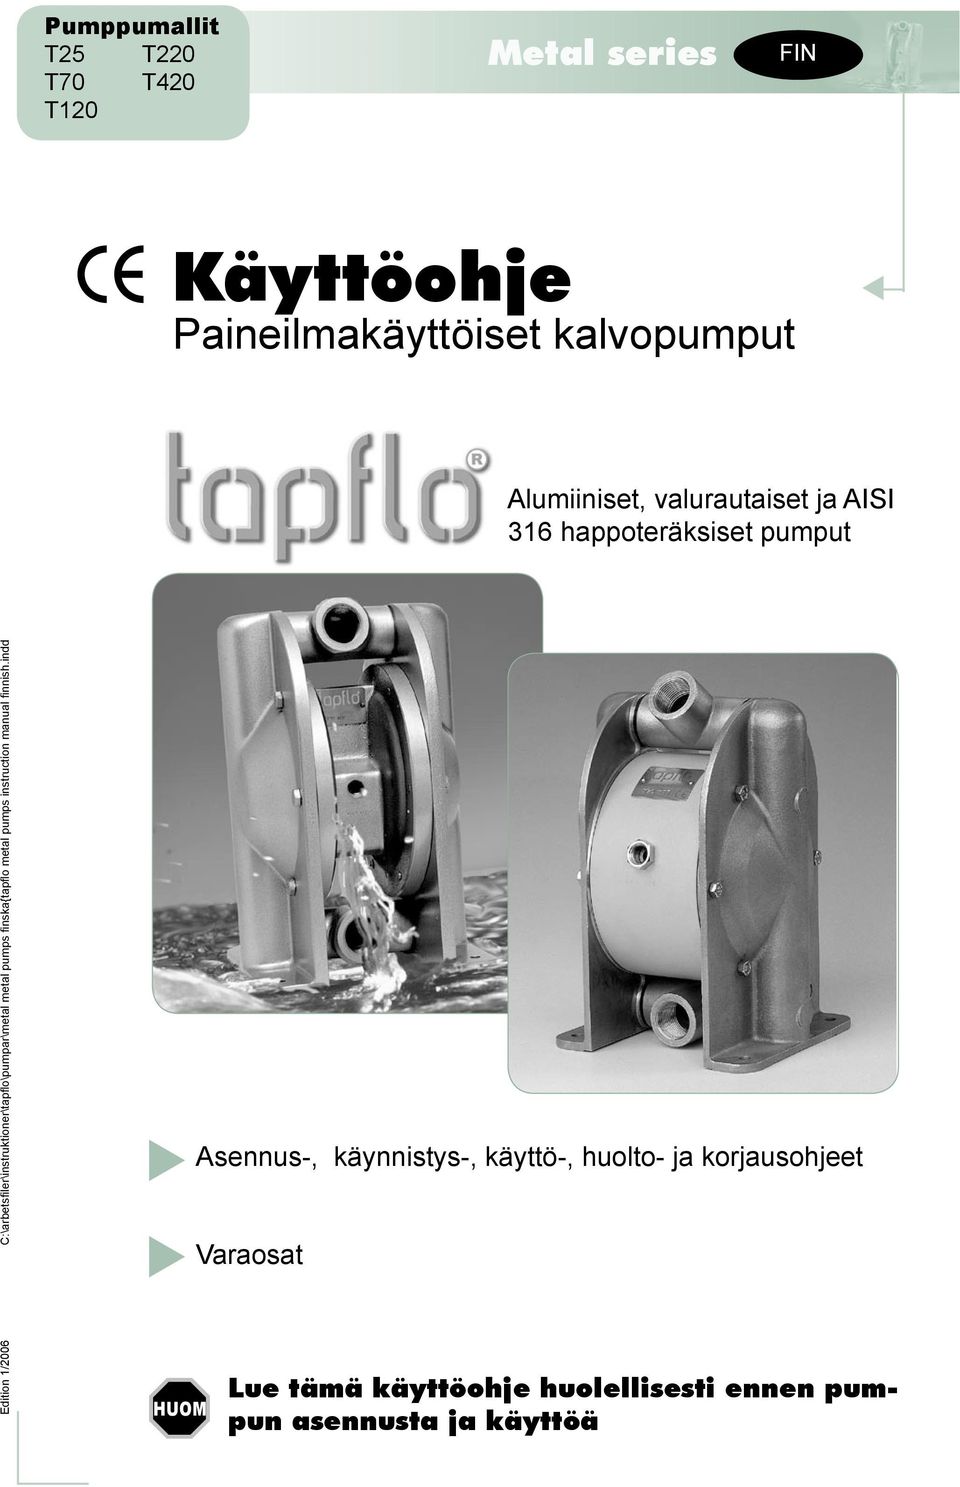 C:\arbetsfiler\instruktioner\tapflo\pumpar\metal metal pumps finska{tapflo metal pumps instruction manual